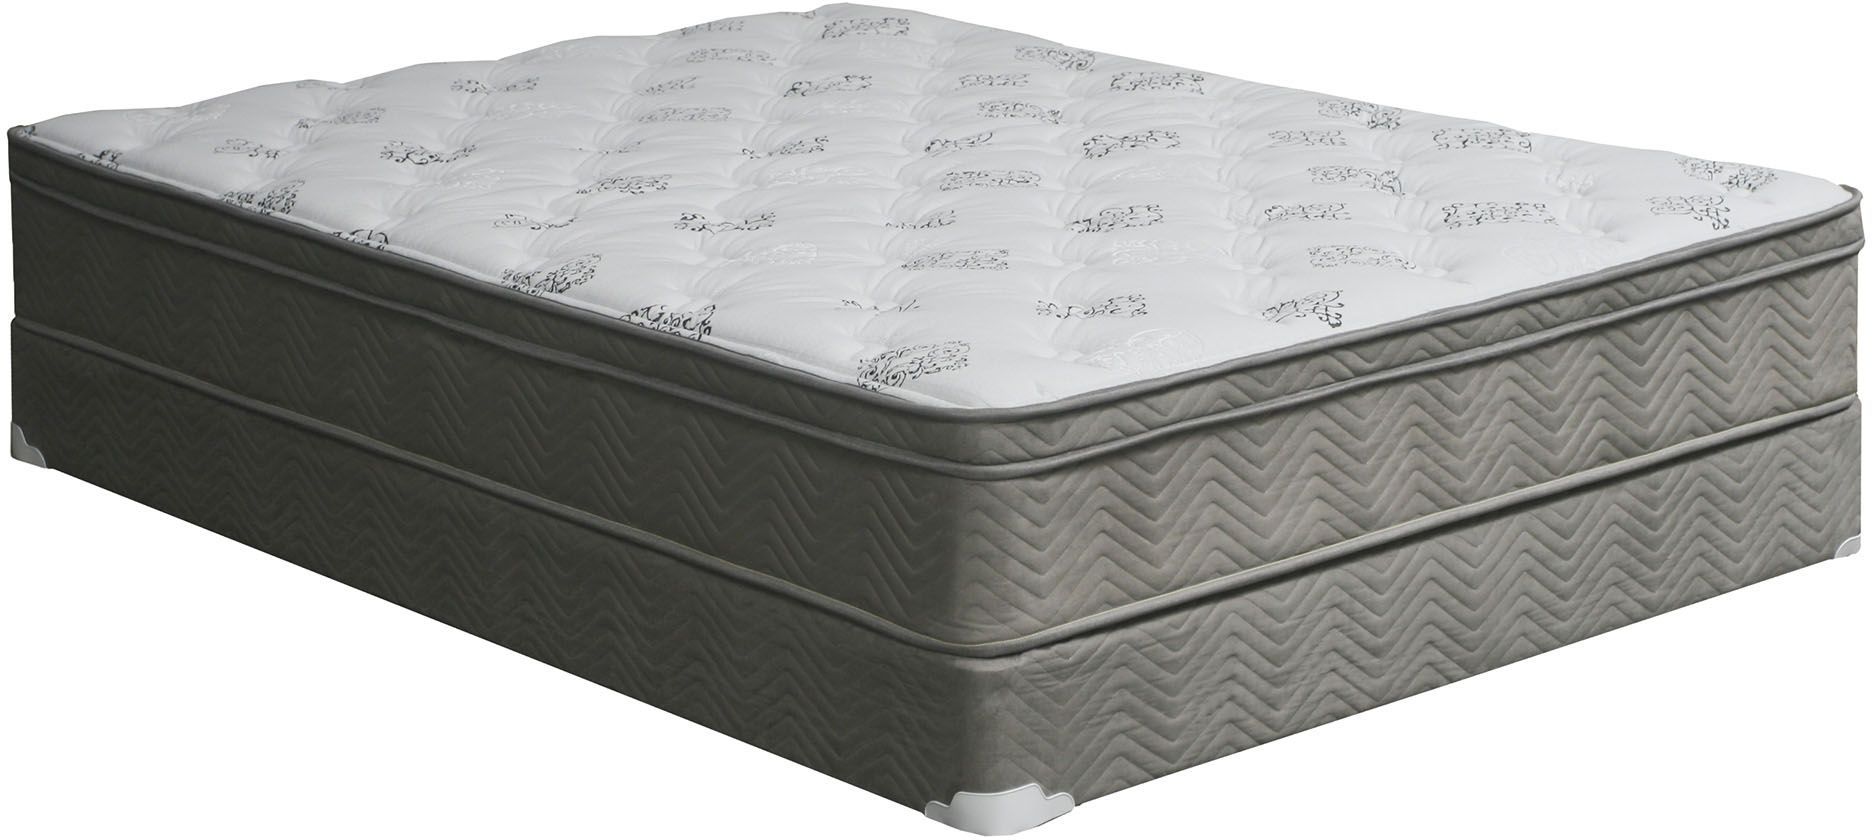 erta perfect sleeper atmore queen euro top mattress